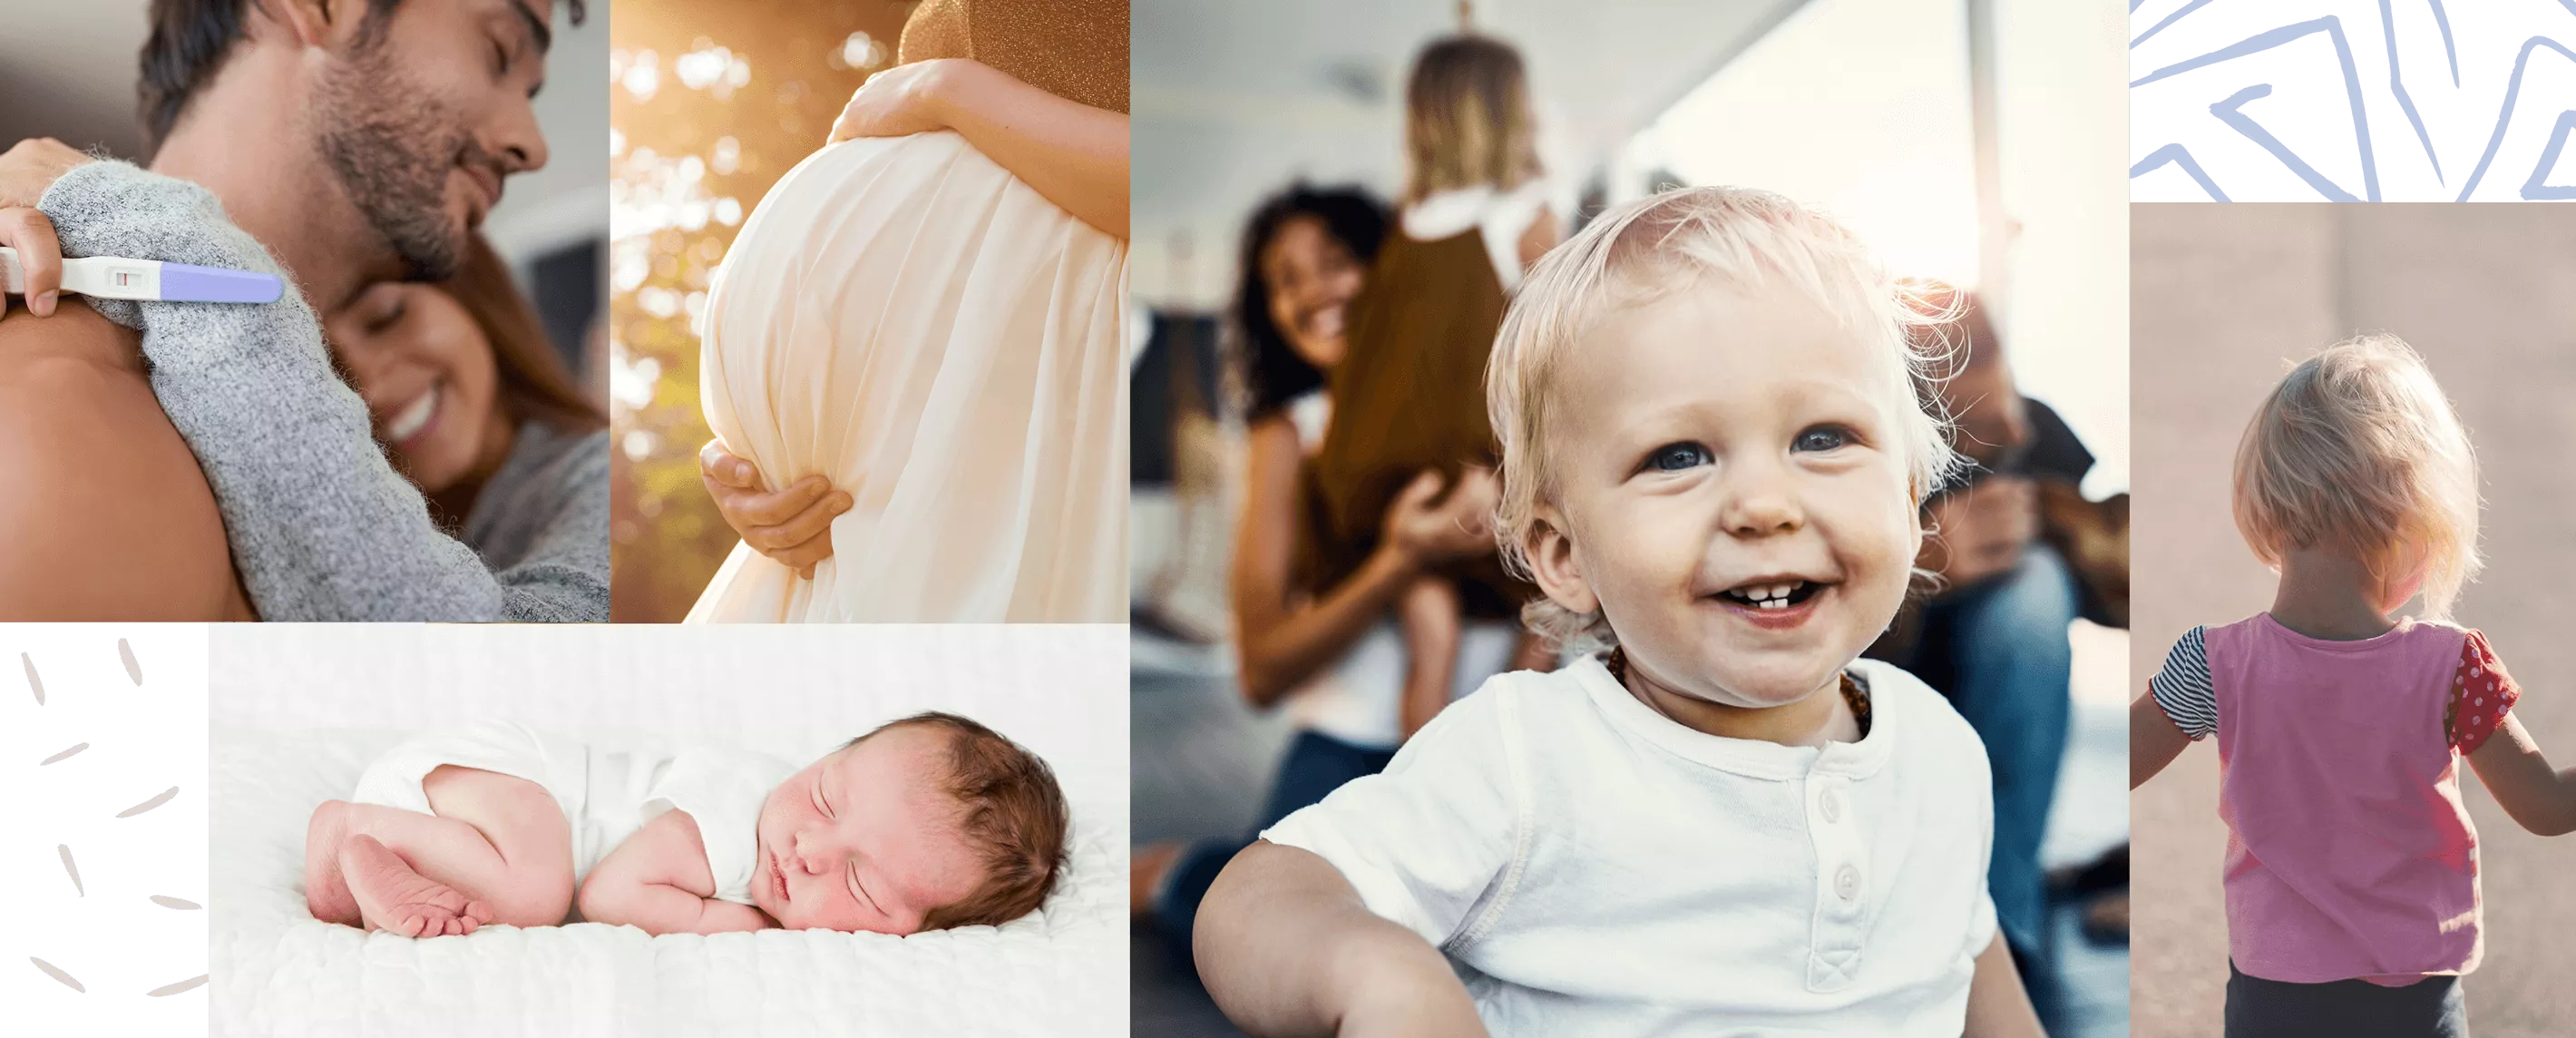 Collage di immagini: coppia con un test di gravidanza positivo; pancia di donna incinta; neonato; bambino sorridente